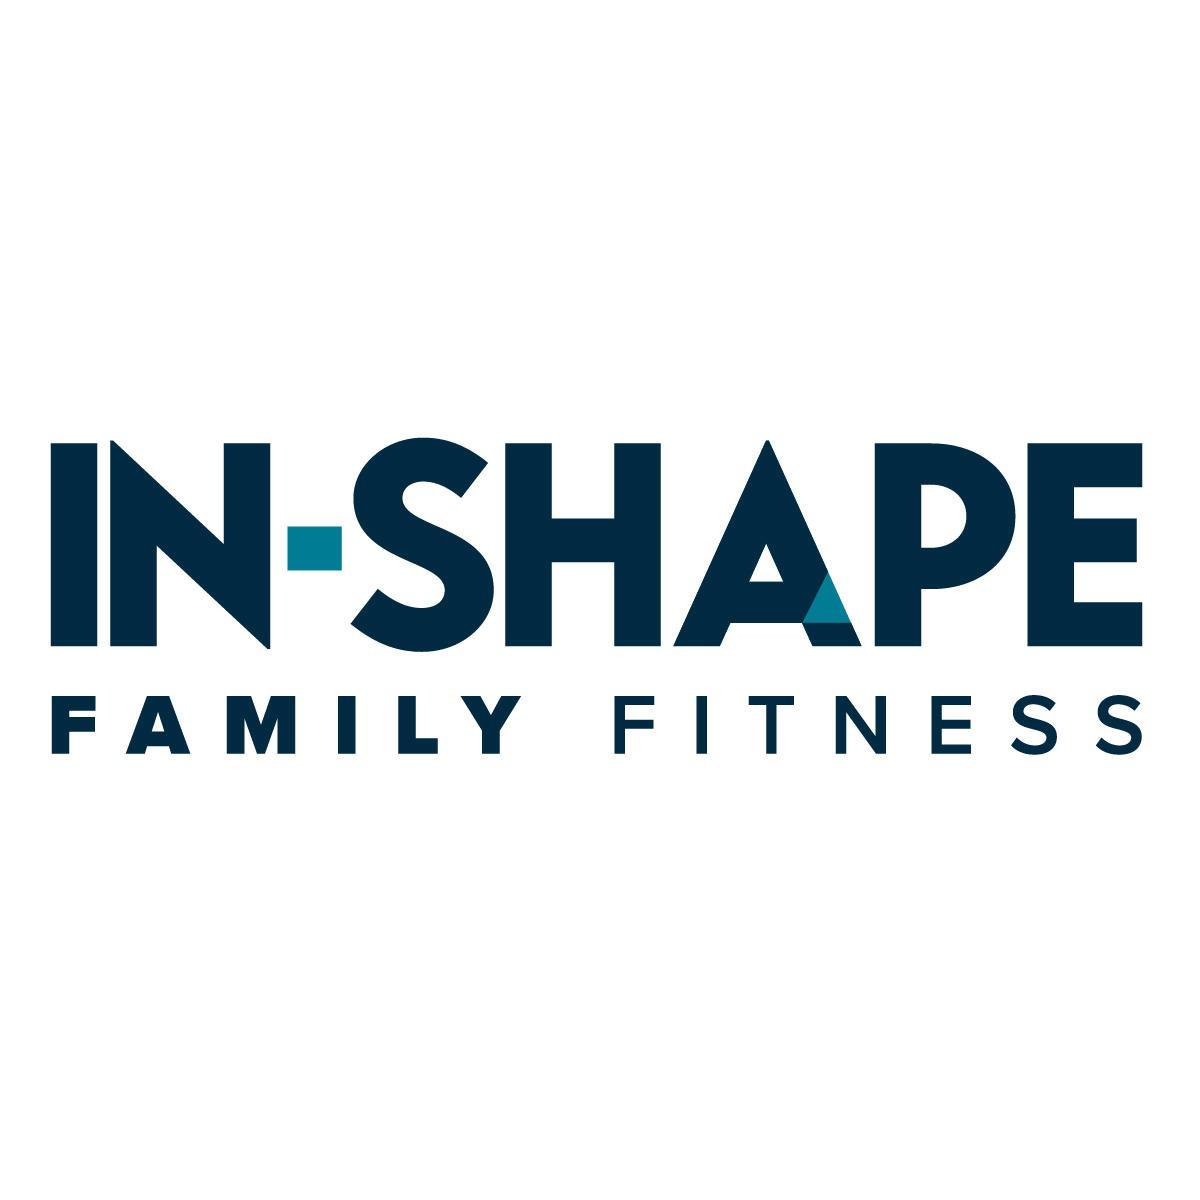 In-Shape Family Fitness - Sacramento, CA 95814 - (916)447-1325 | ShowMeLocal.com